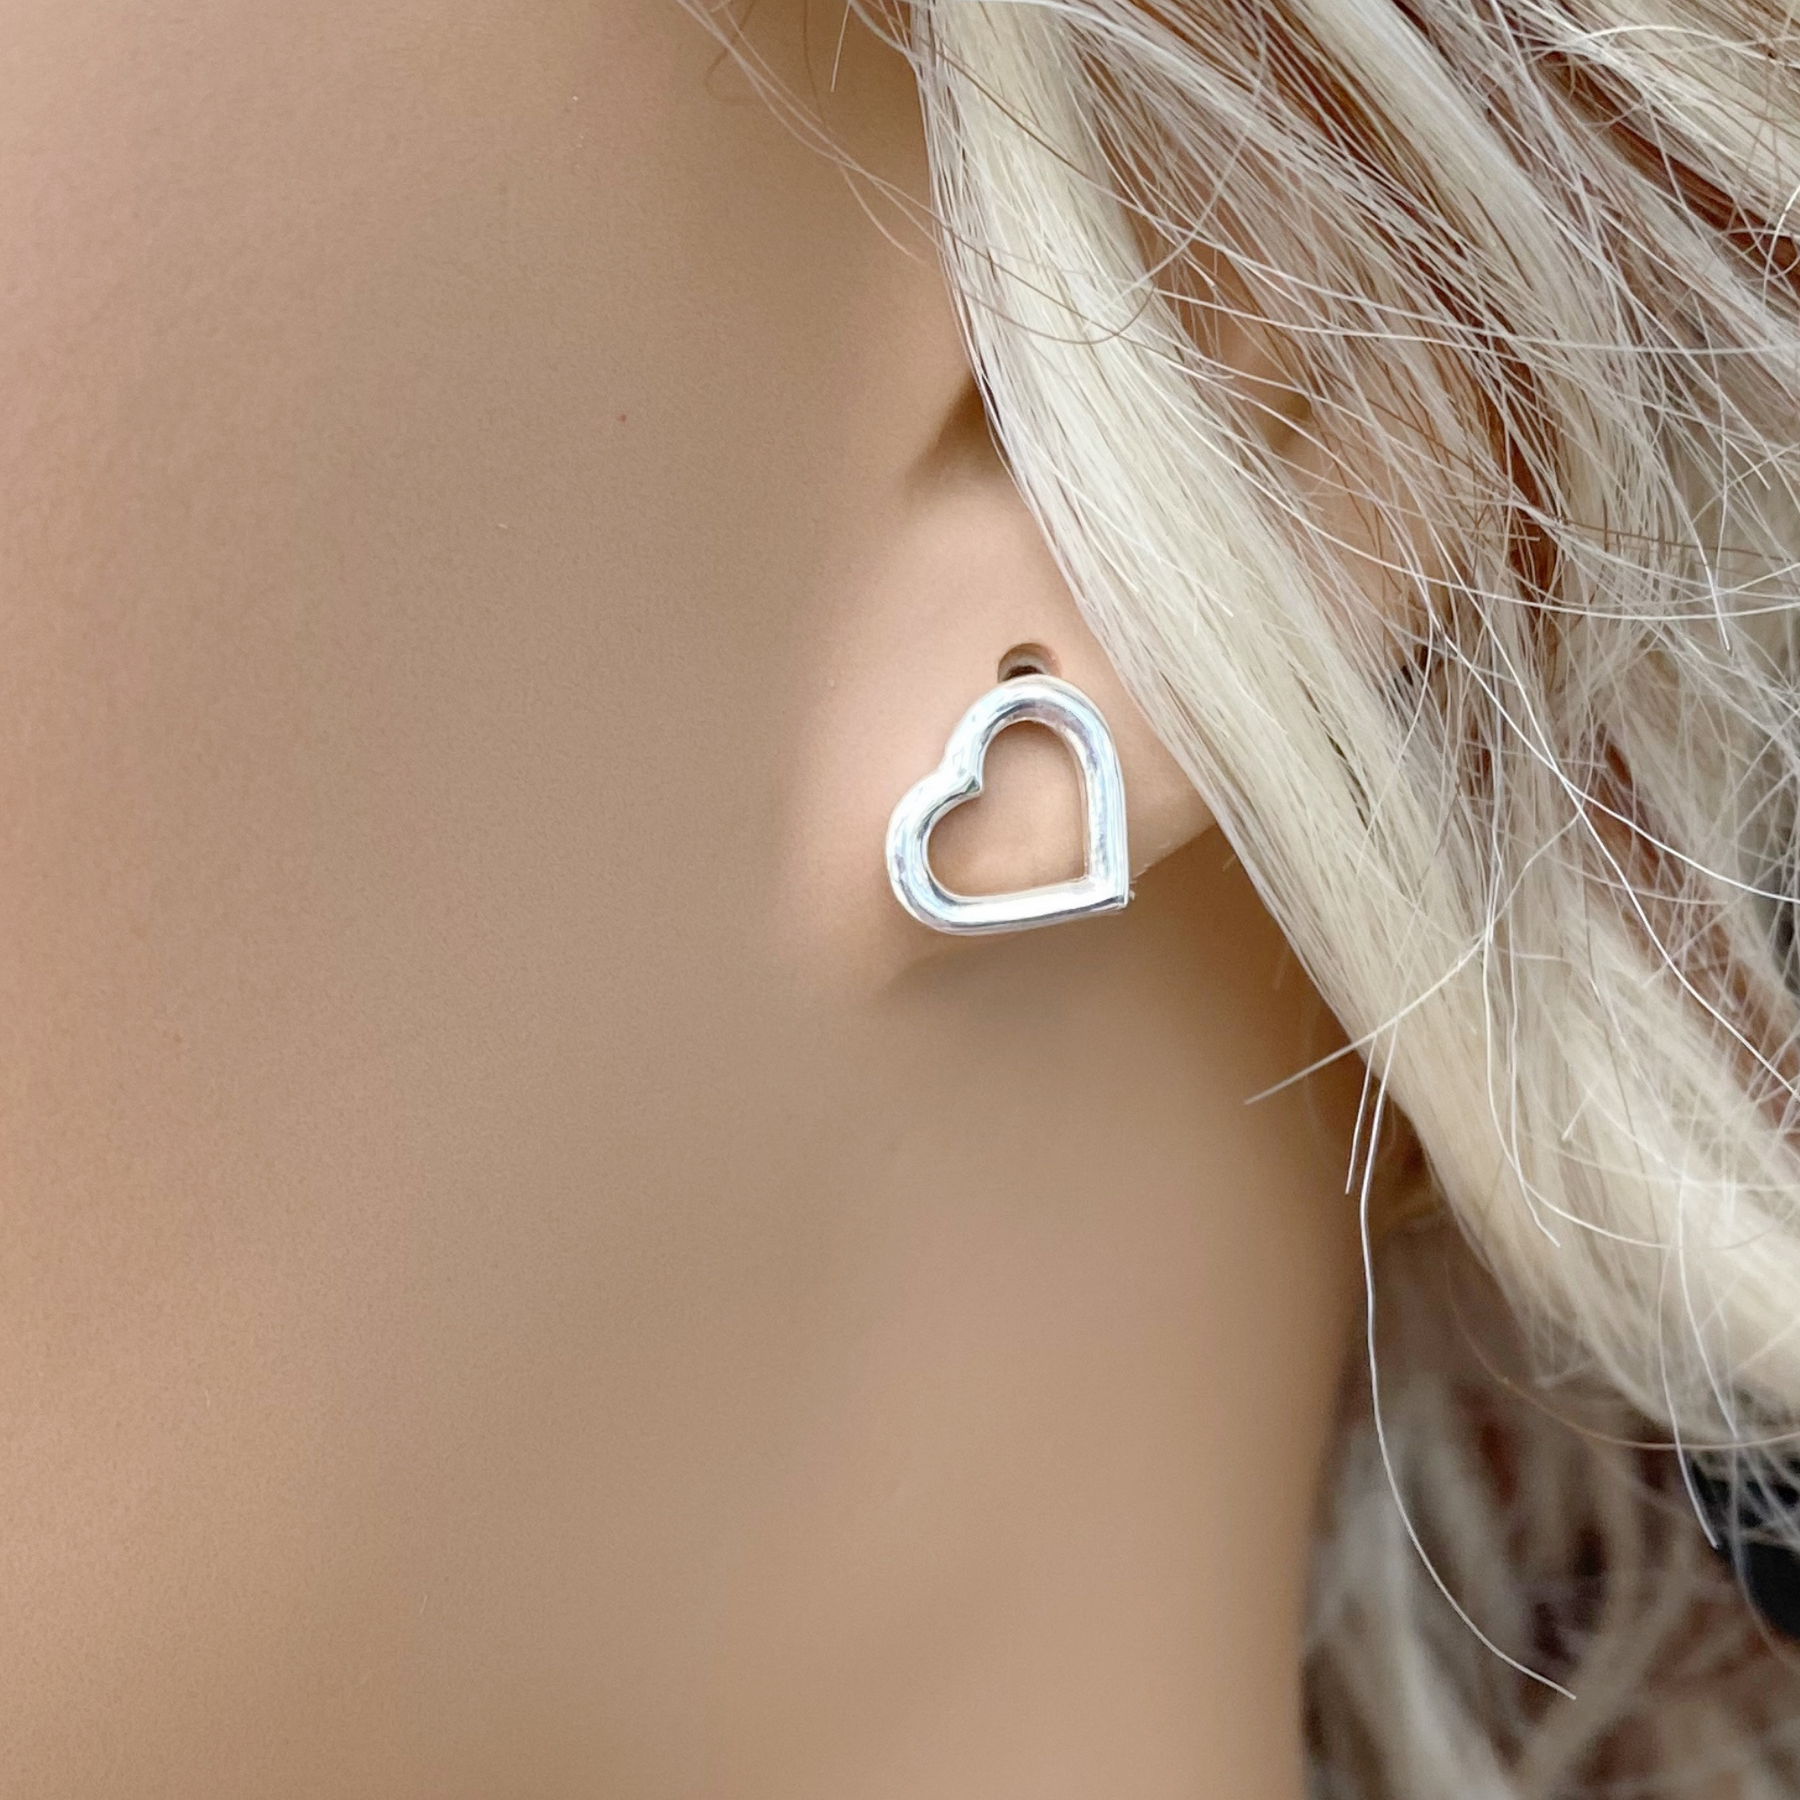 Sterling Silver Open Heart Earrings